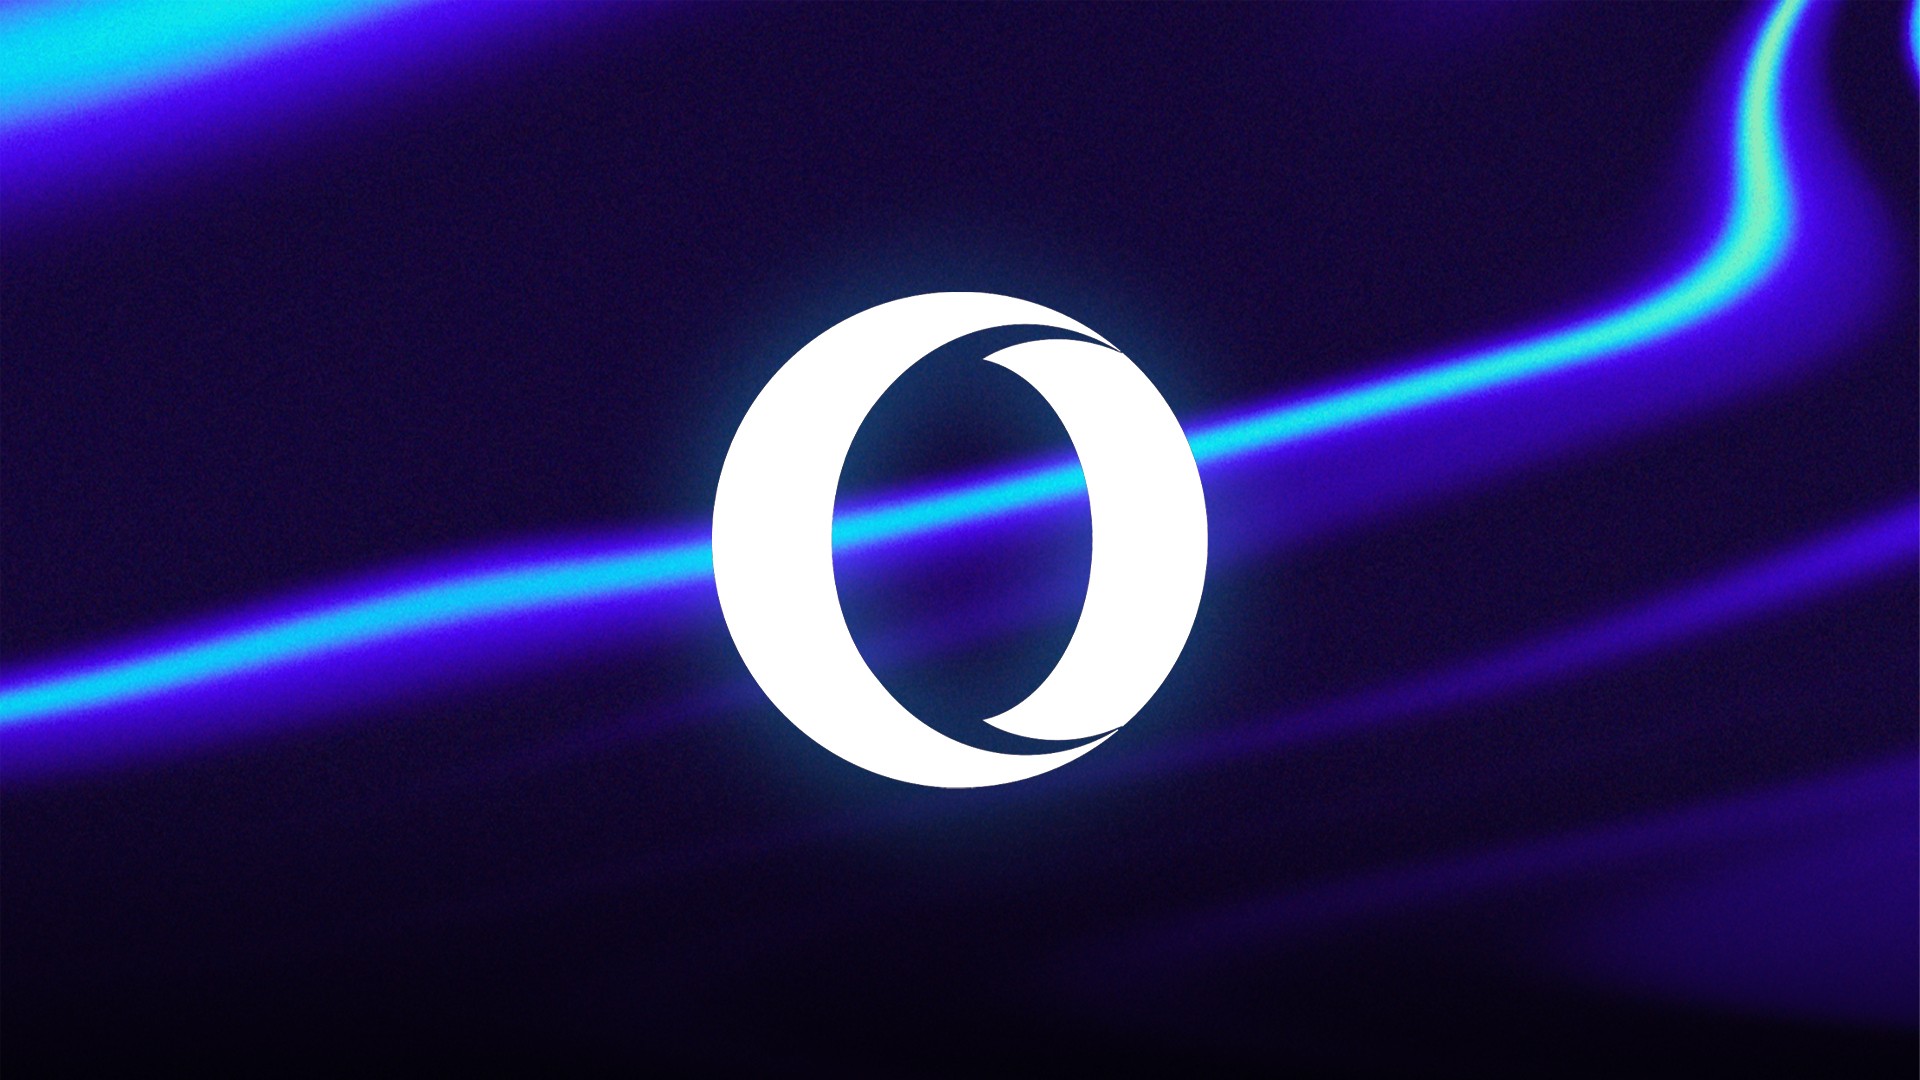 Opera lança navegador Opera One com interessante sistema de organização de abas